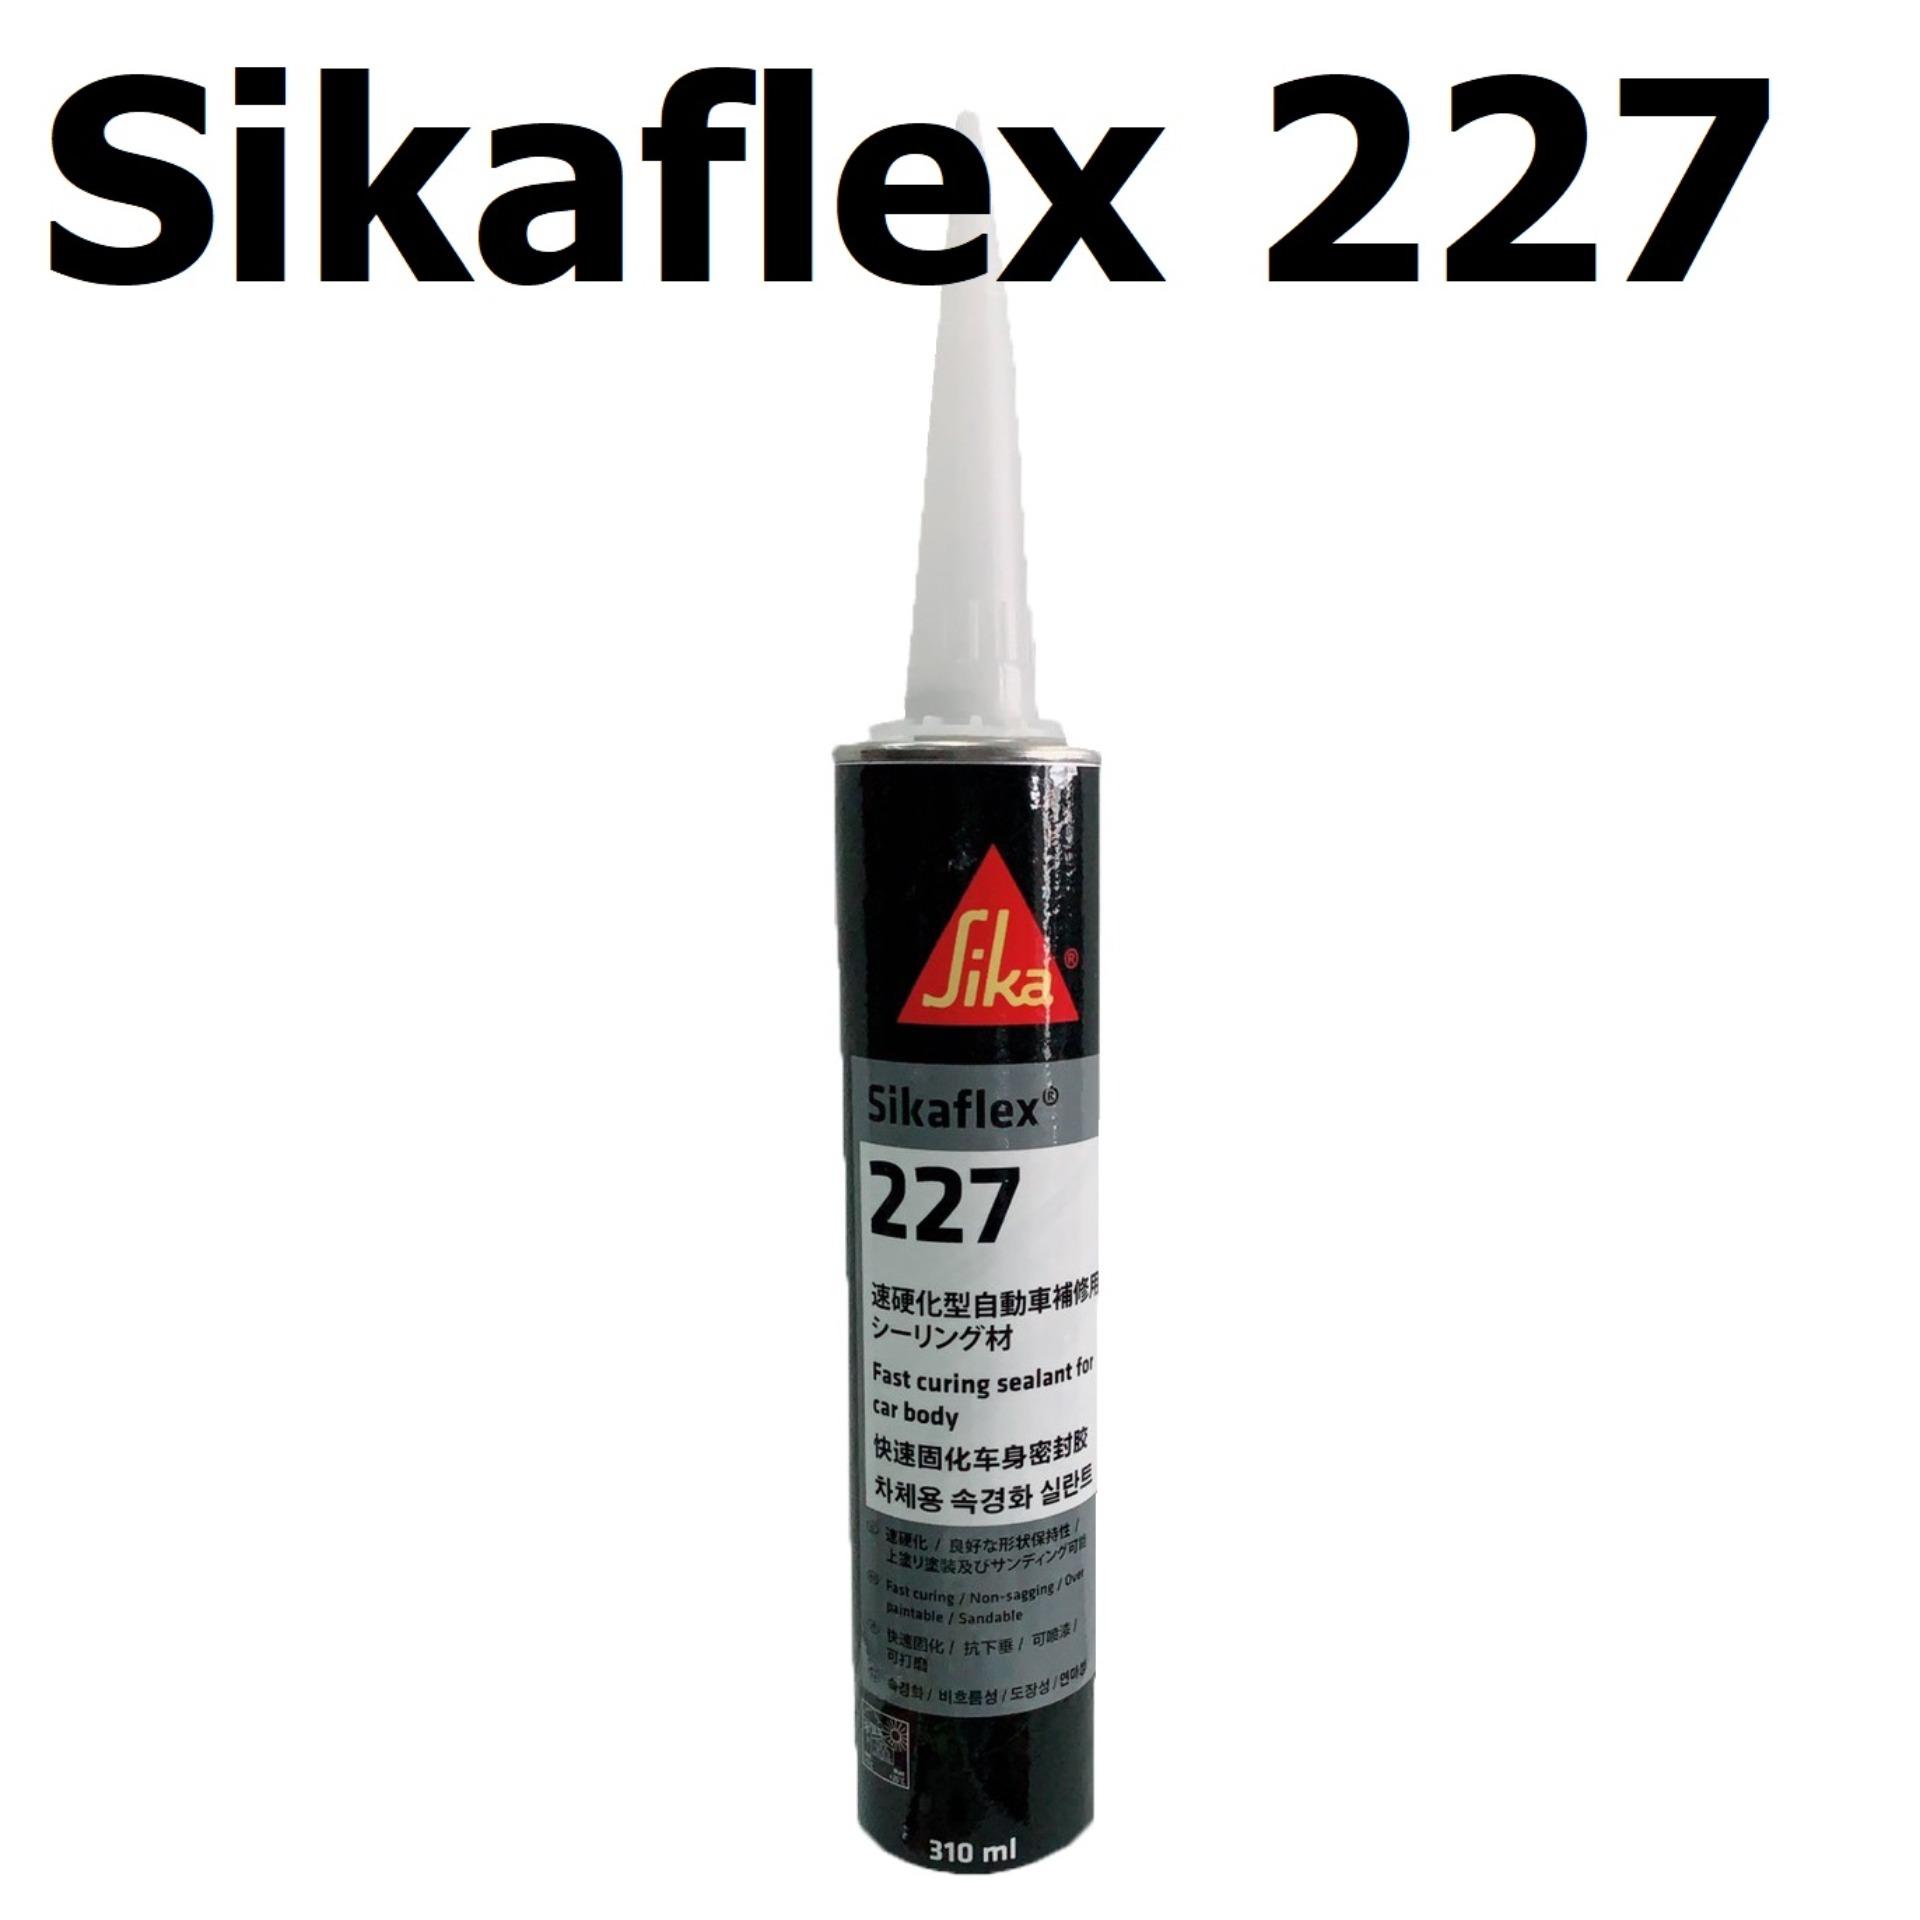 กาวโพลียูรีเทนหลอดแข็ง 310มล. สีขาว ซิก้า Sika Sikaflex 227 Polyurethane Sealant White 10.3 oz Cartridge